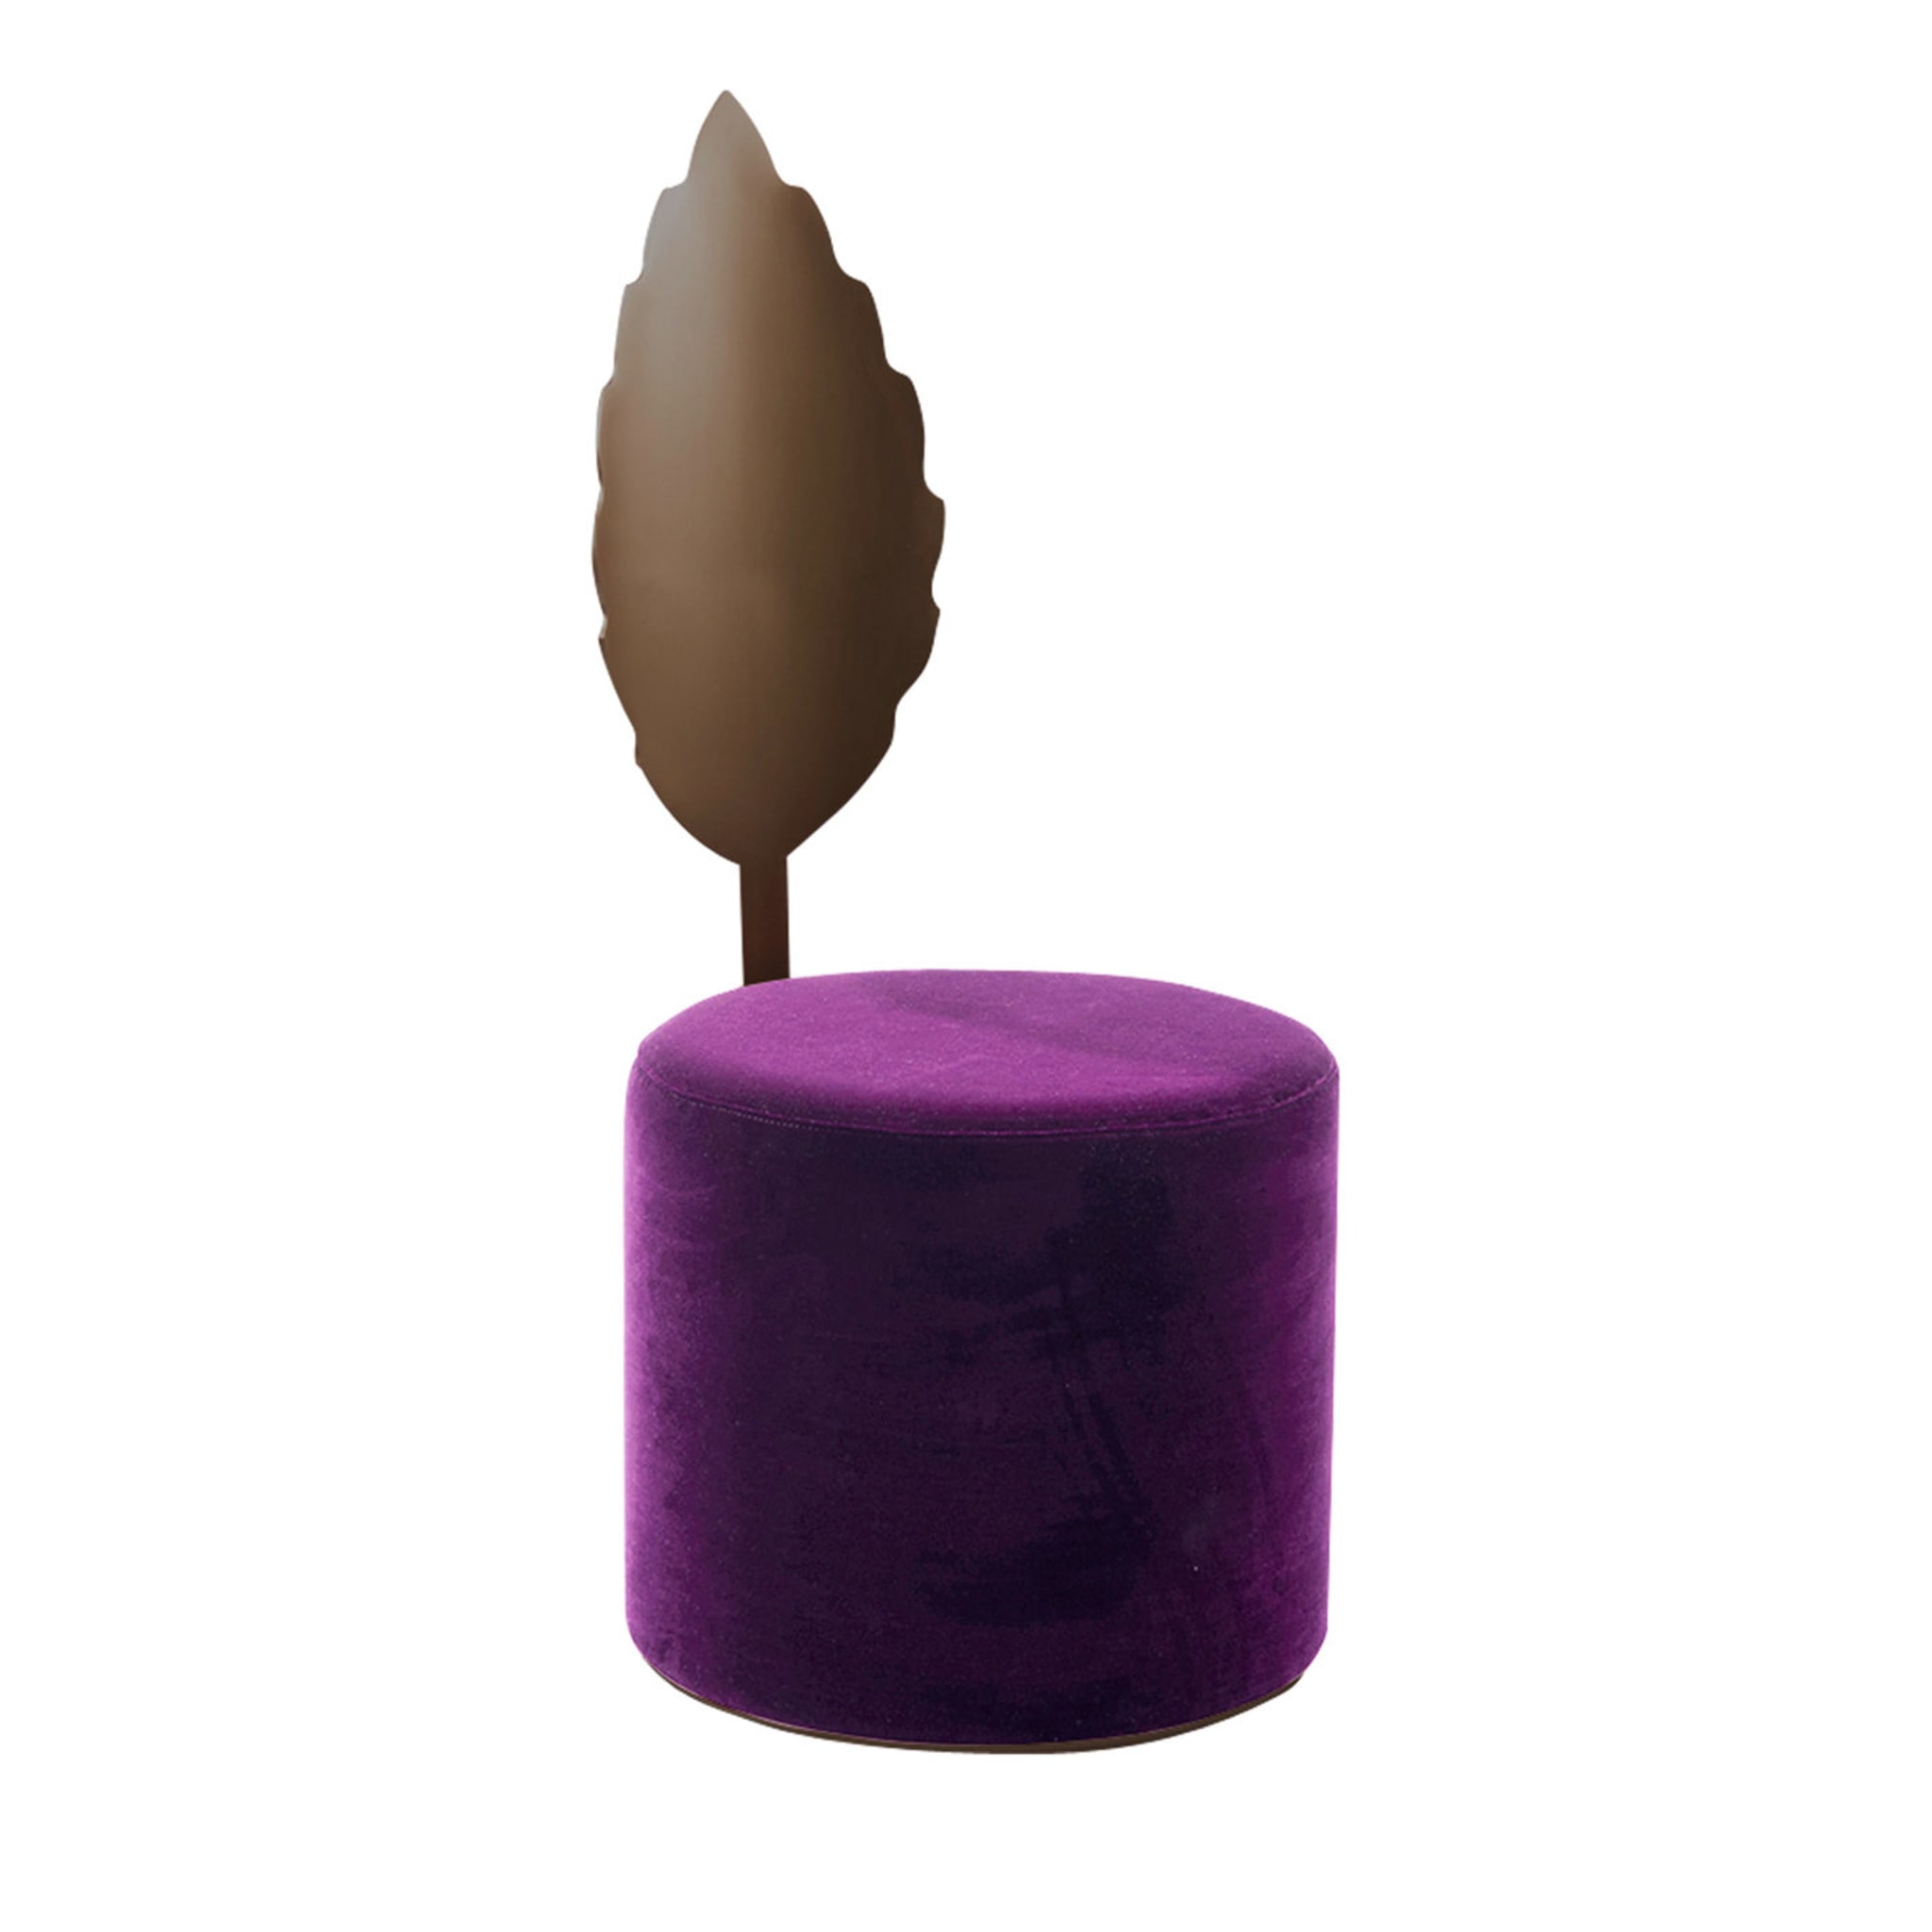 Pouf Holly Purple #1 di Artefatto Design Studio - Vista principale